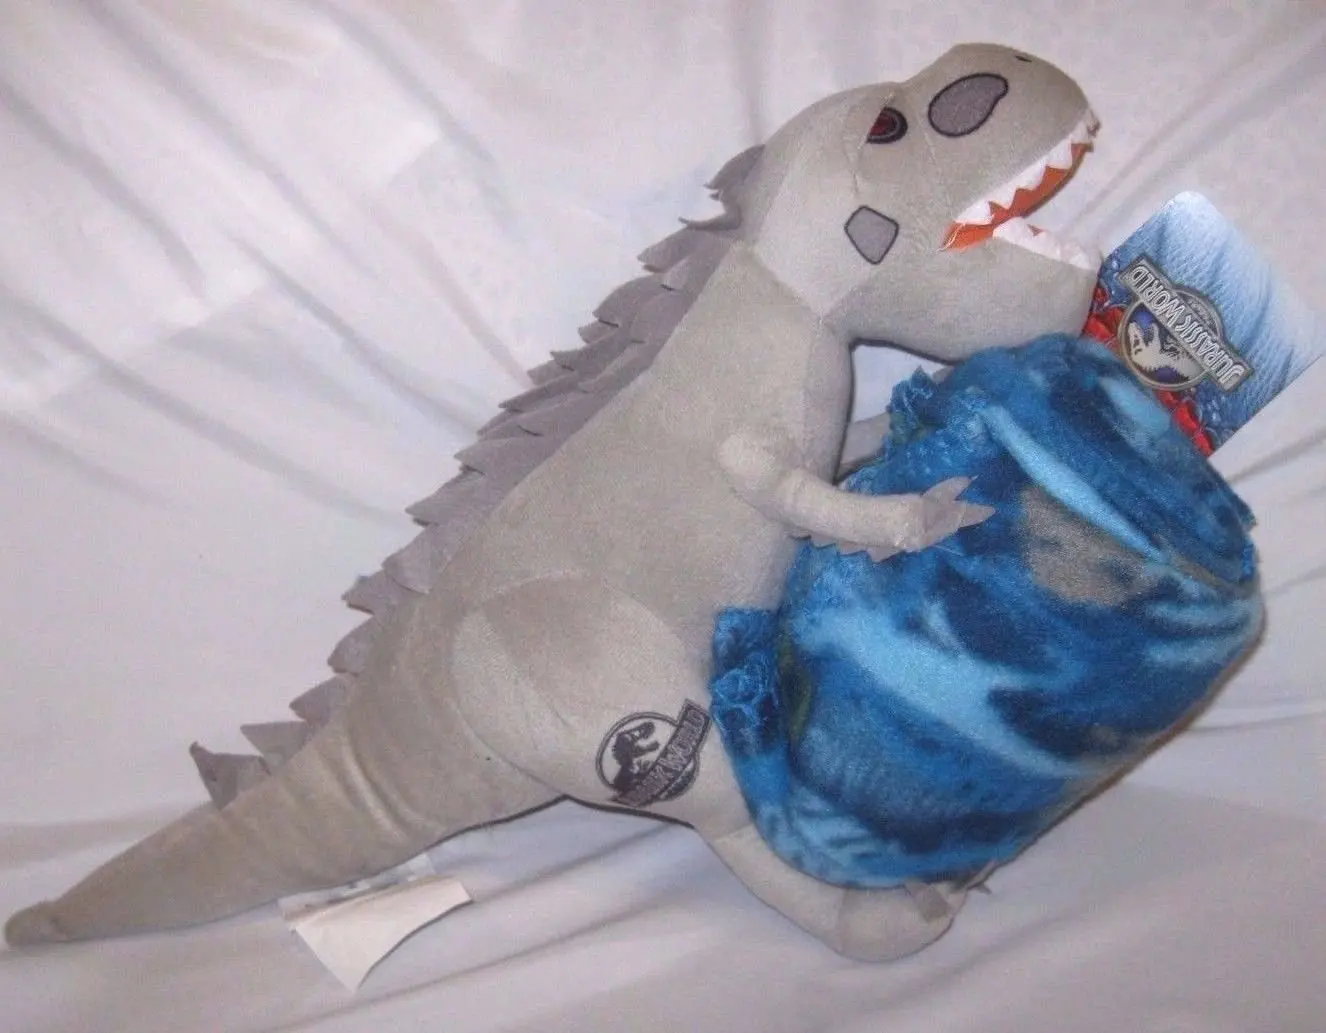 indominus rex stuffed animal